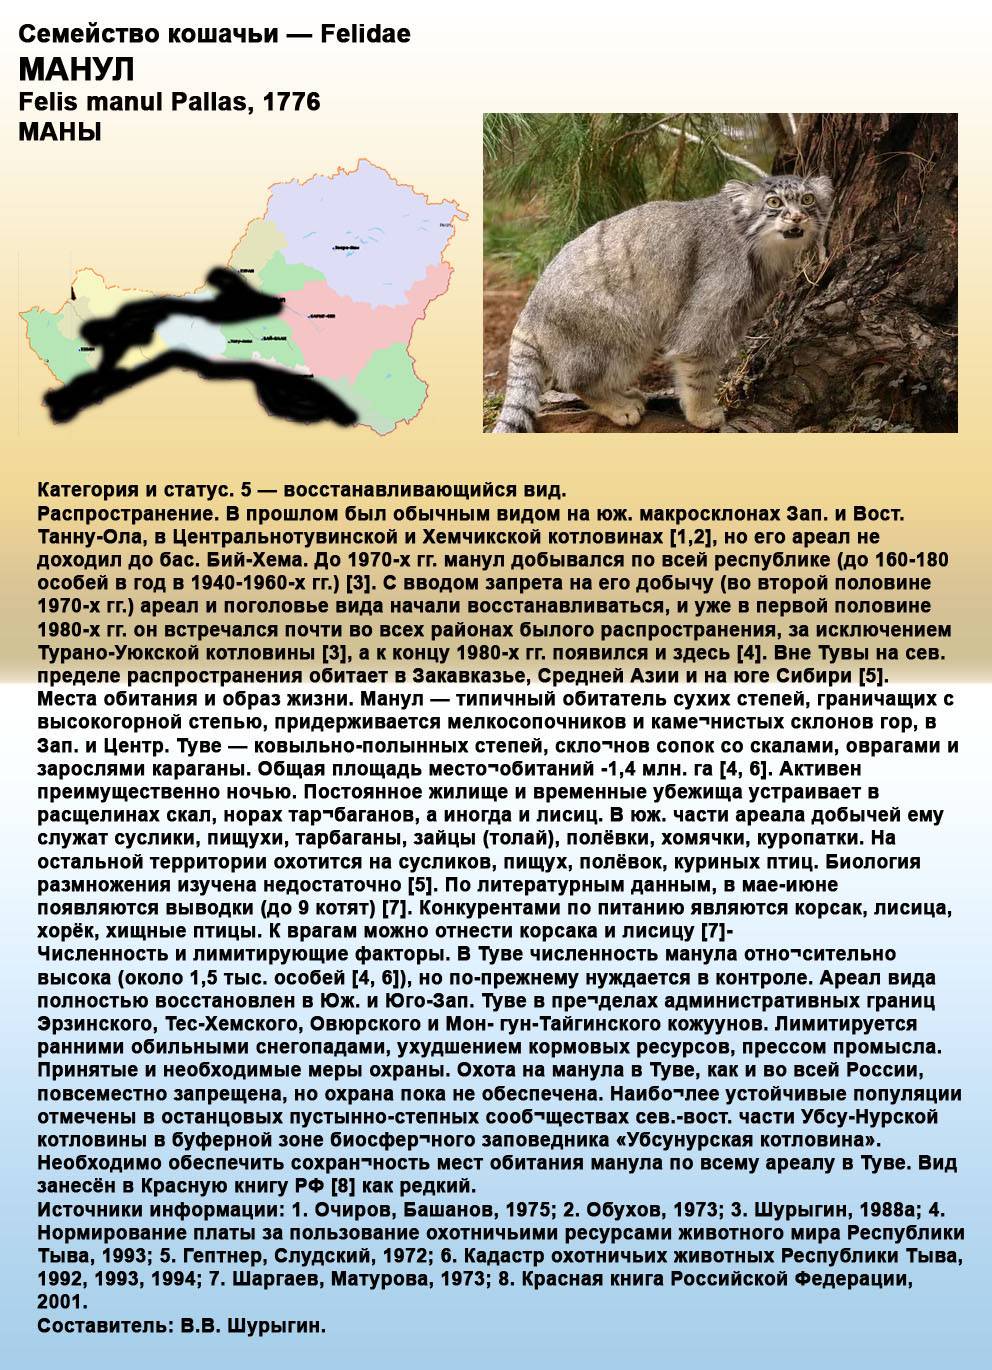 Дикая кошка онцилла: описание внешности и характера, ареал обитания и образ жизни, размножение и численность вида